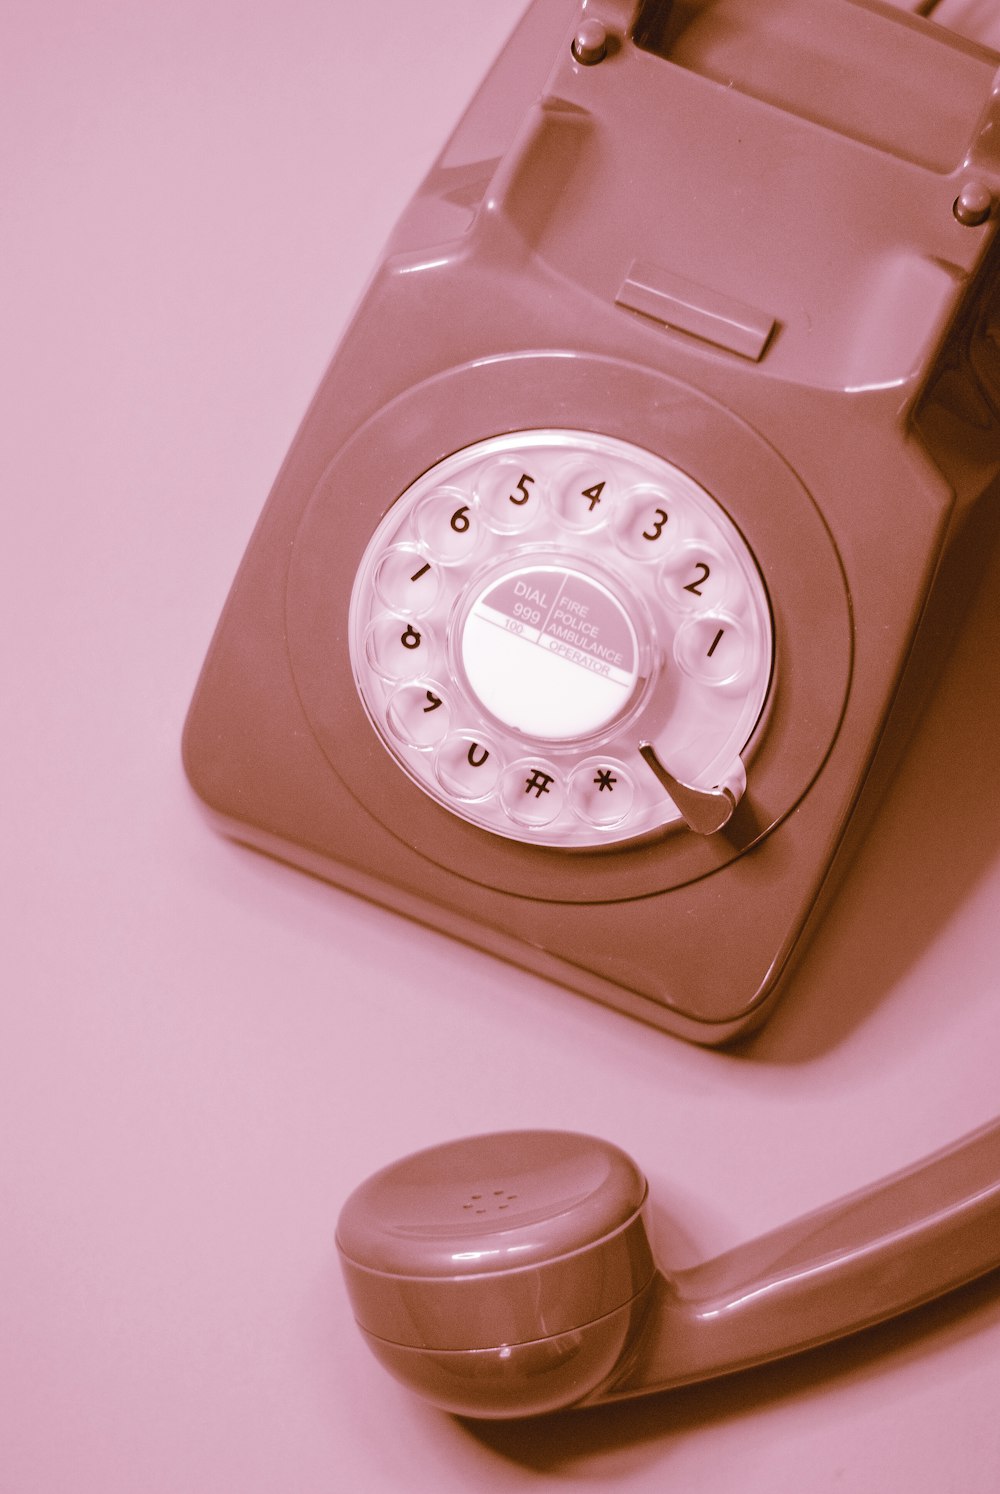 Téléphone à cadran blanc sur table rose